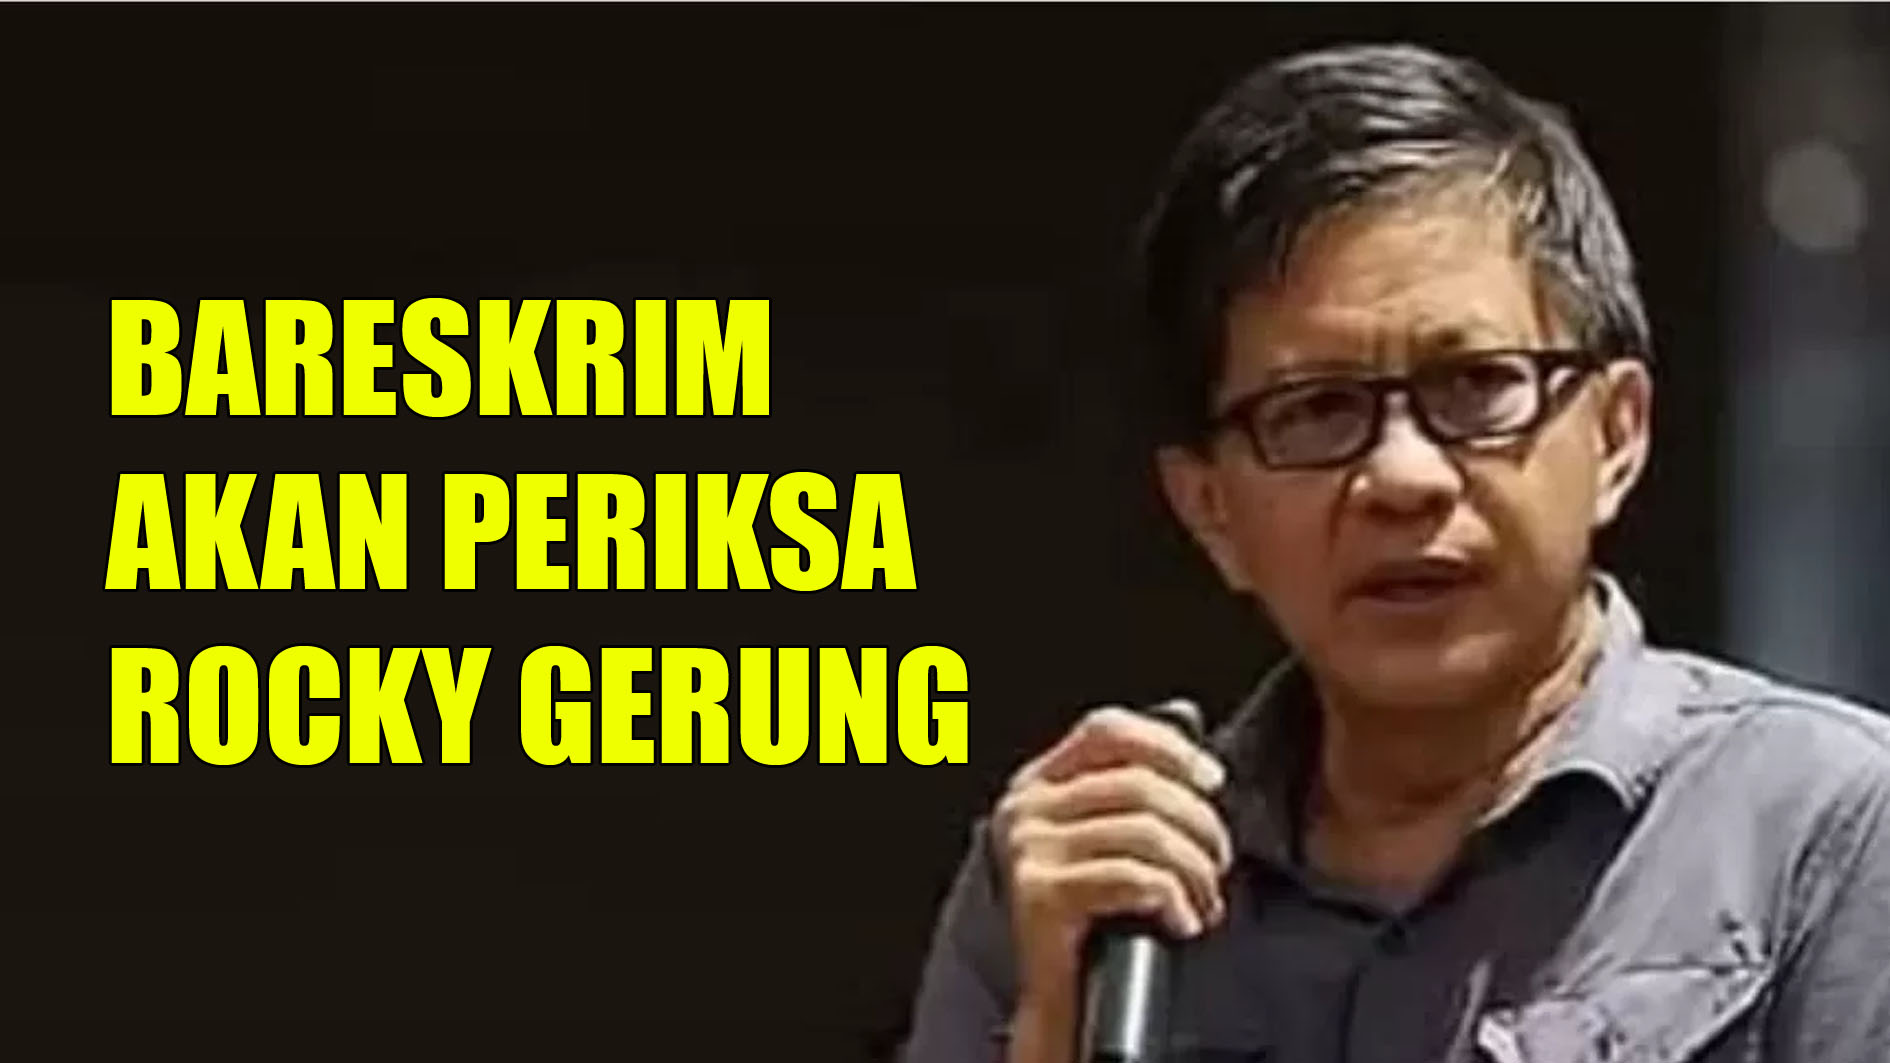 Hari ini Bareskrim Akan Periksa Rocky Gerung dalam Kasus Dugaan Penghinaan ke Presiden Jokowi